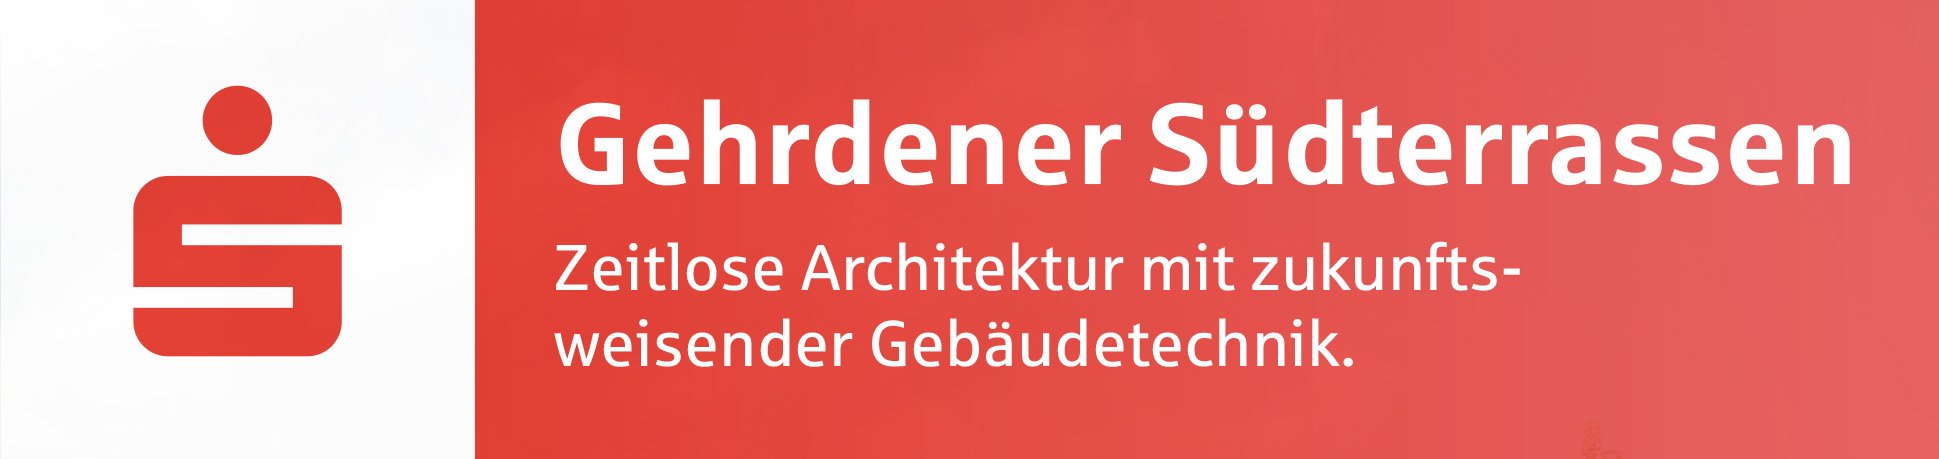 Image new build property Gehrdener Südterrassen, Gehrden